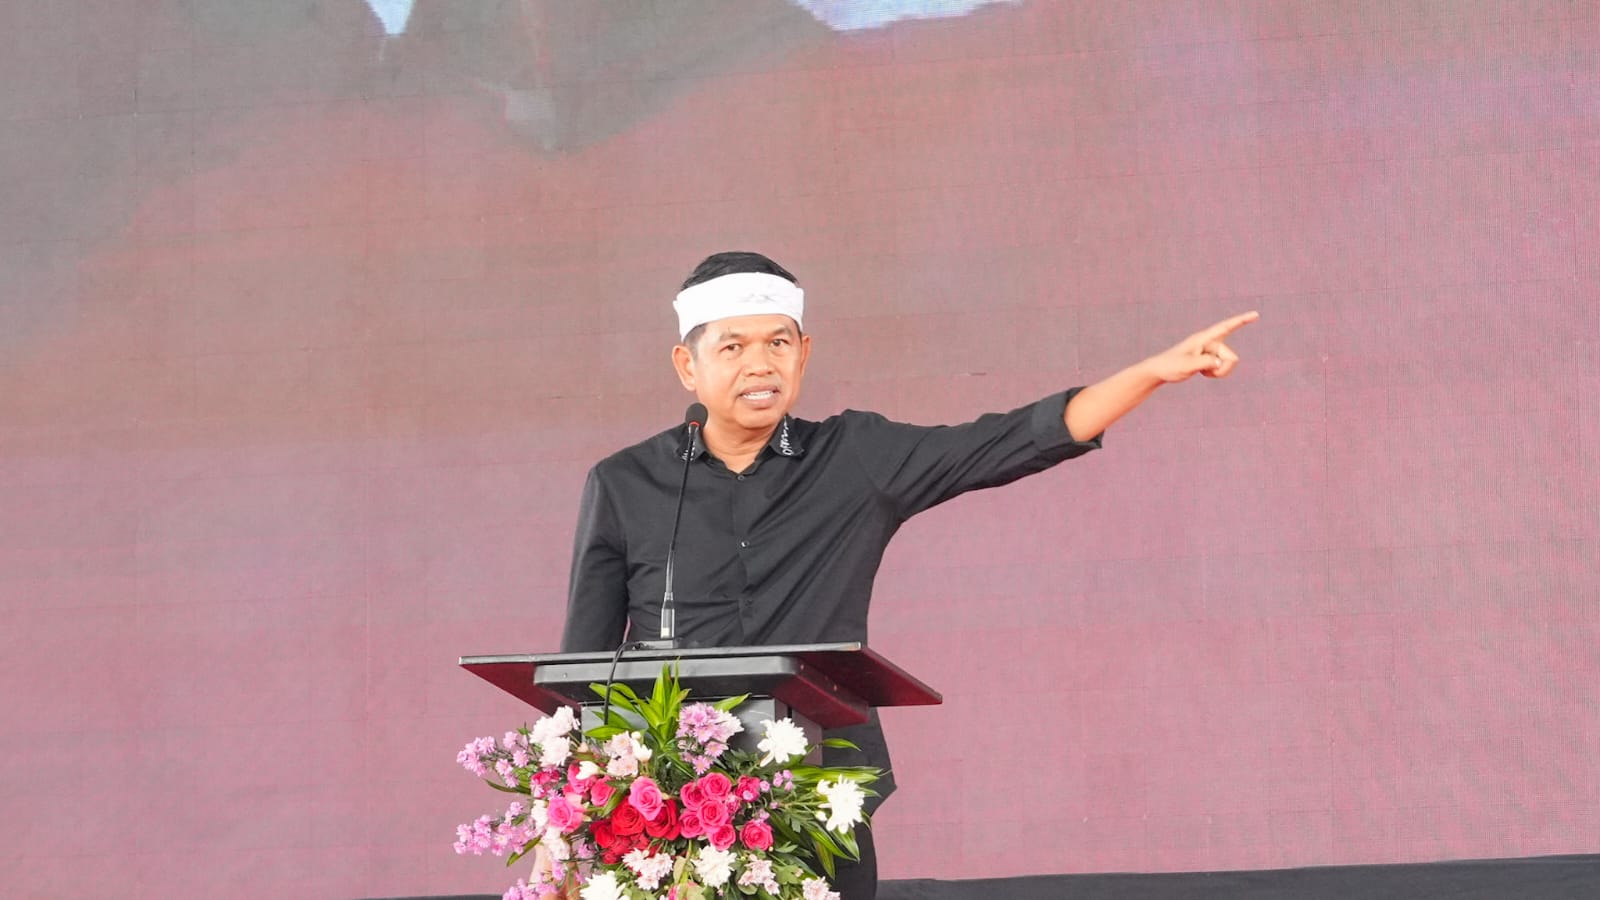 Prabowo Dianugerahi Jenderal Kehormatan, Dedi Mulyadi: Dicapai Penuh Air Mata, Bukan Simsalabim